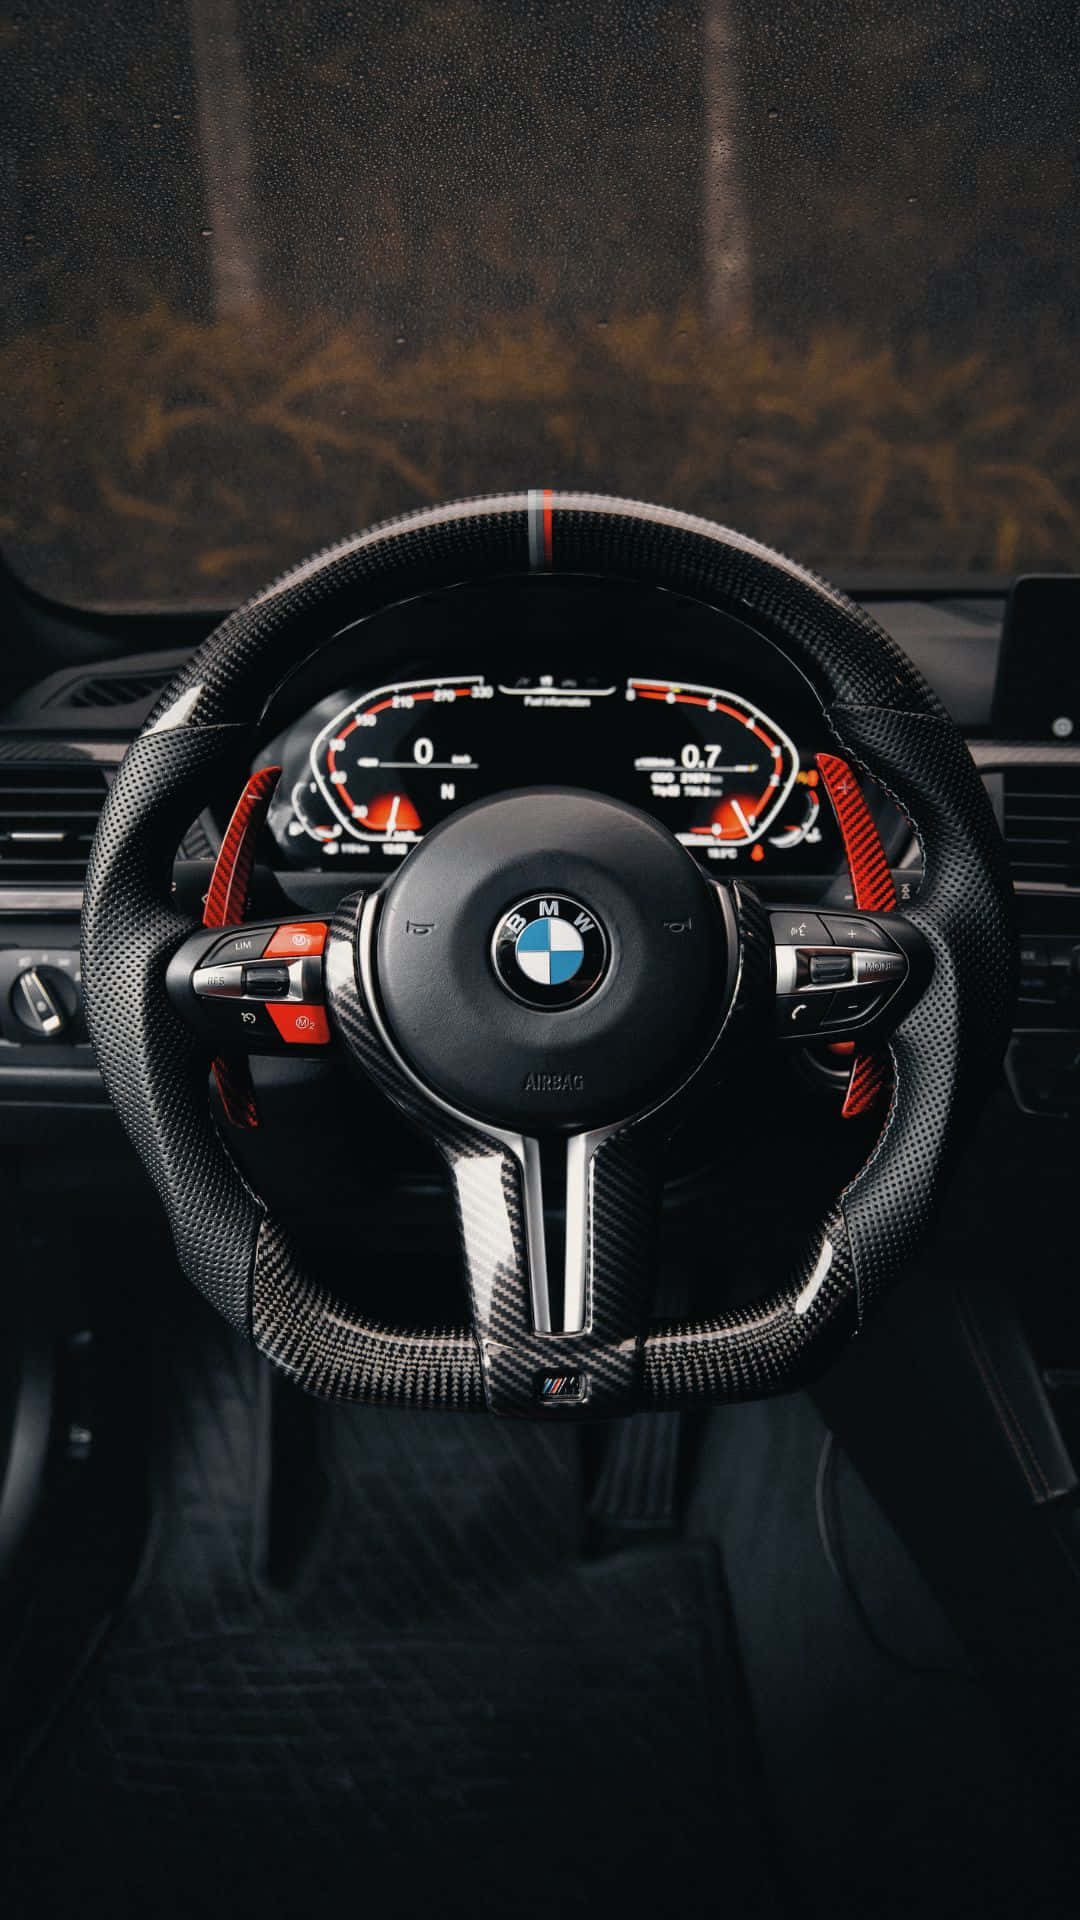 Hold dig opdateret med de nyeste BMW modeller og Android-verdenen.